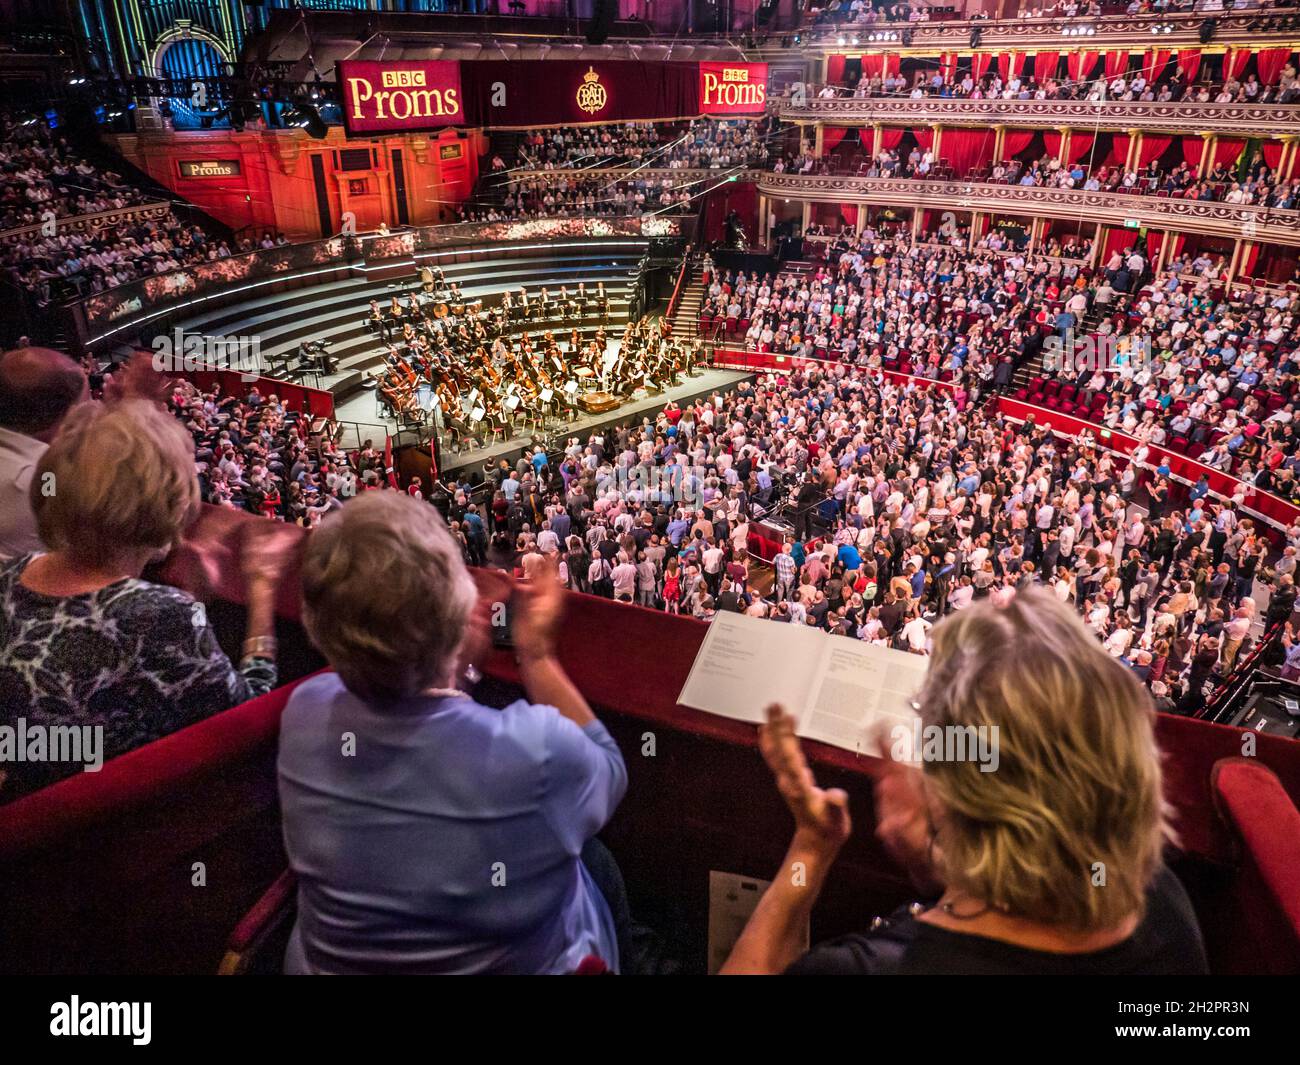 HINTER London UK verbirgt SICH DER AUFTRITT der BBC PROMS mit dem klatschenden Publikum, das von einer luxuriösen roten Velours-Privatbox auf die Zuschauer- und Orchesterbühne klatscht Stockfoto